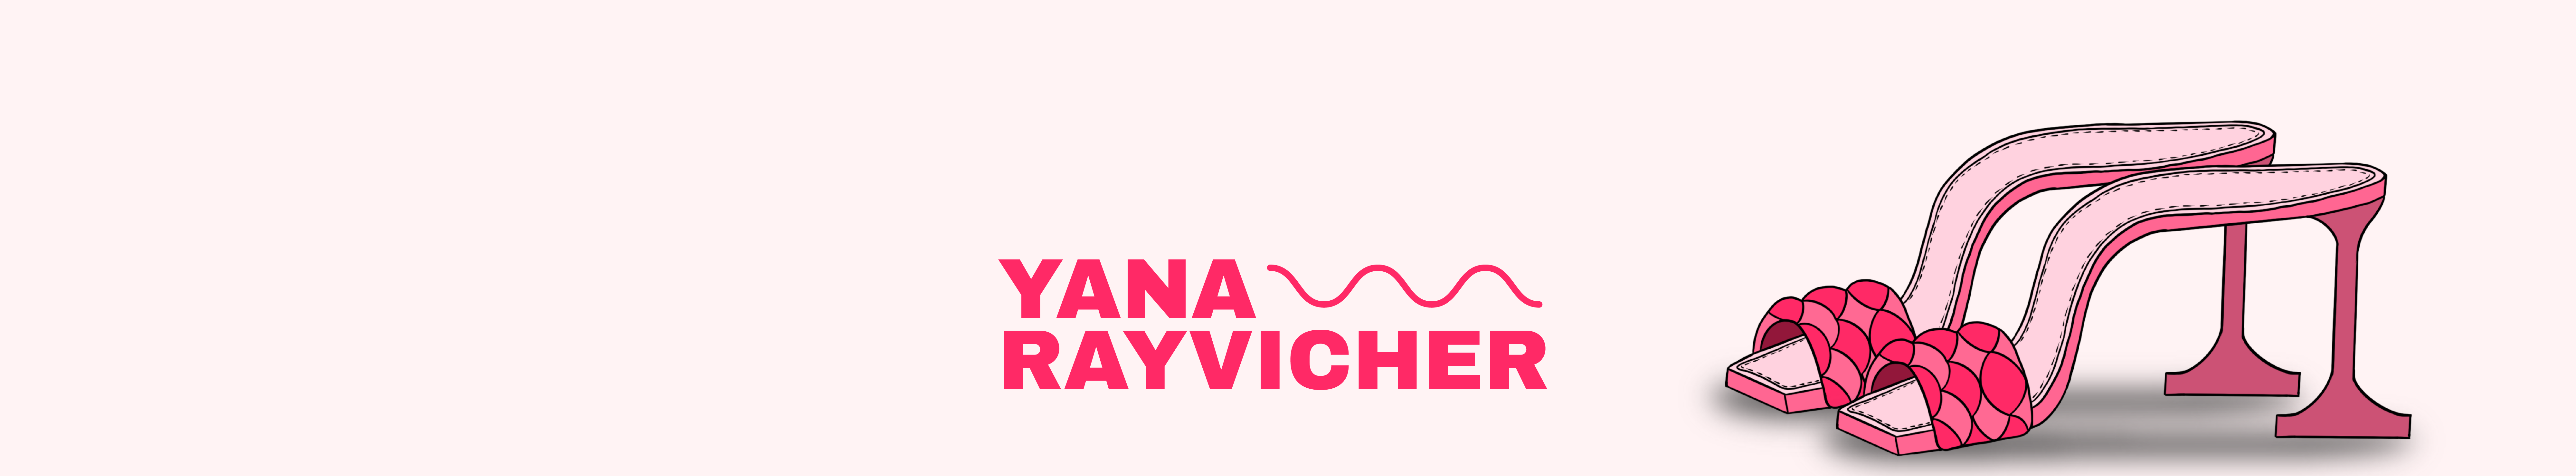 Yana Rayvicher's profile banner